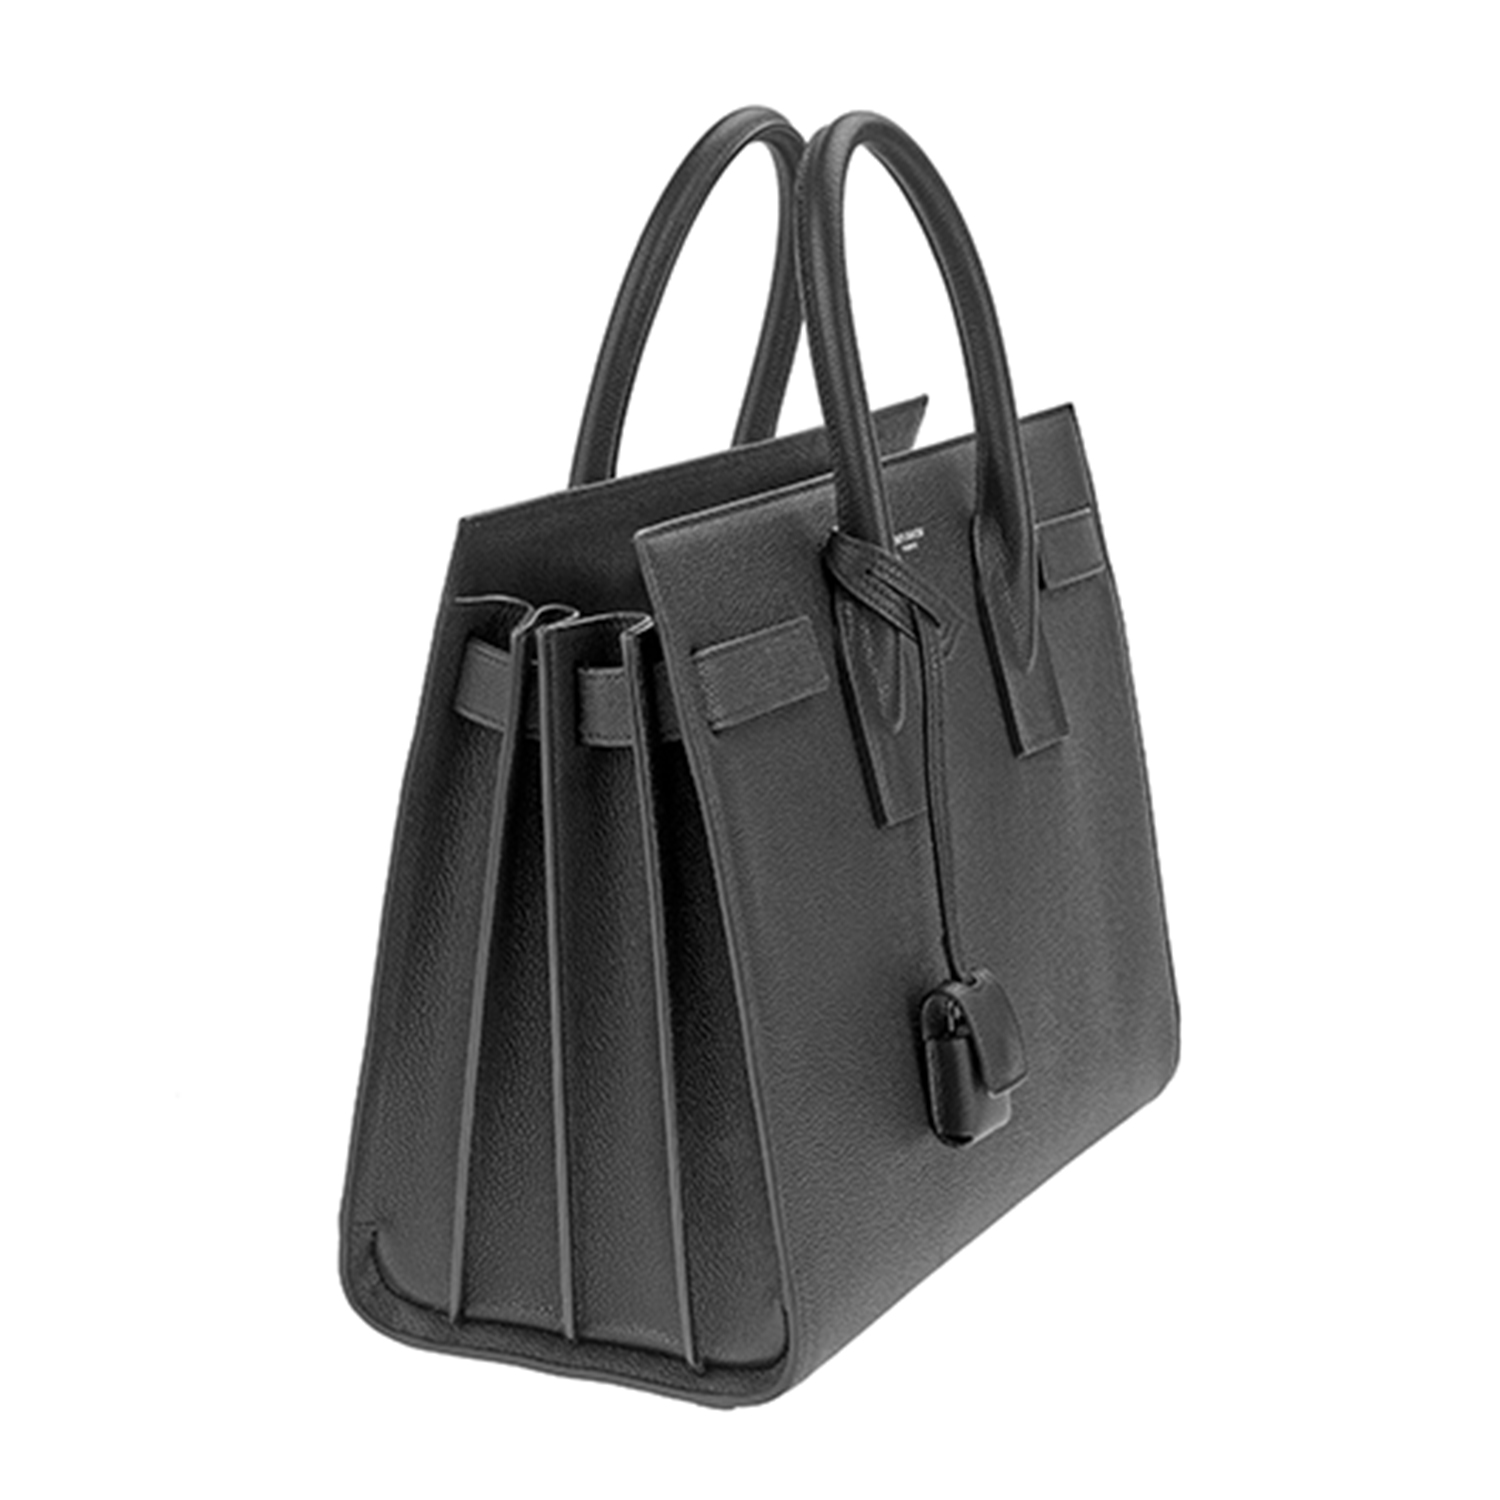 Handbag for rent Yves Saint Laurent Sac De Jour